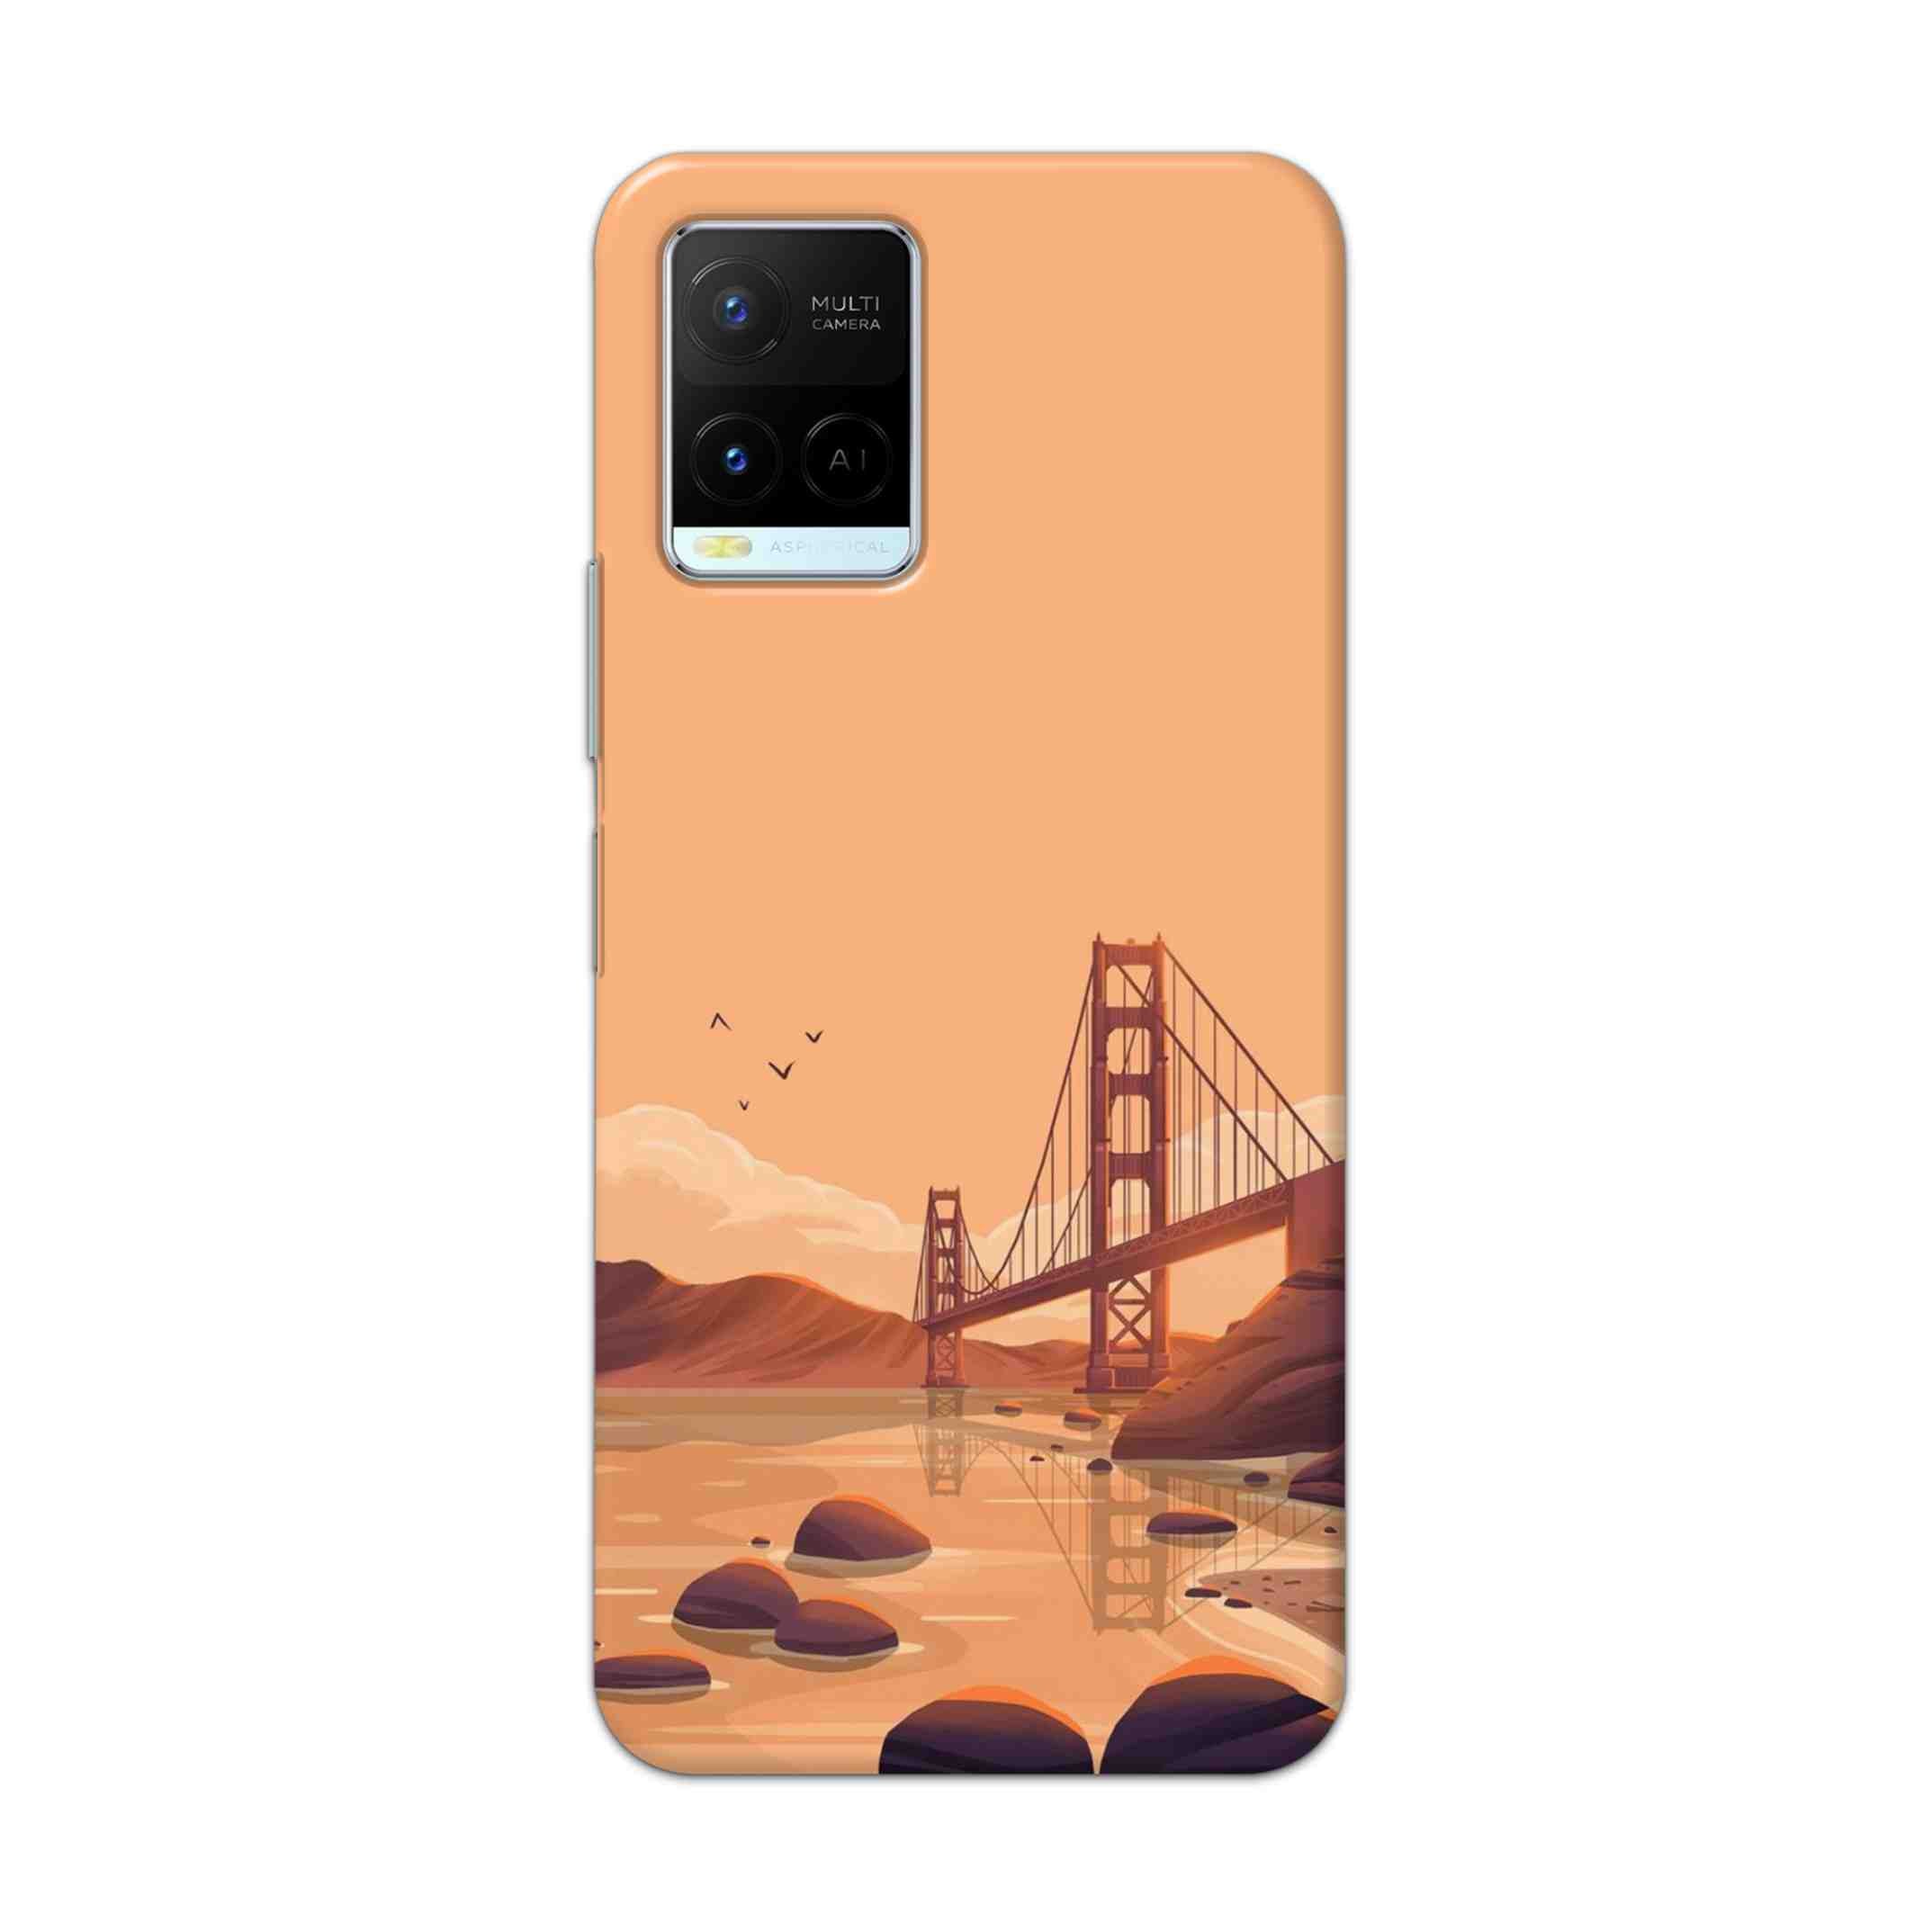 Buy San Francisco Hard Back Mobile Phone Case Cover For Vivo Y21 2021 Online